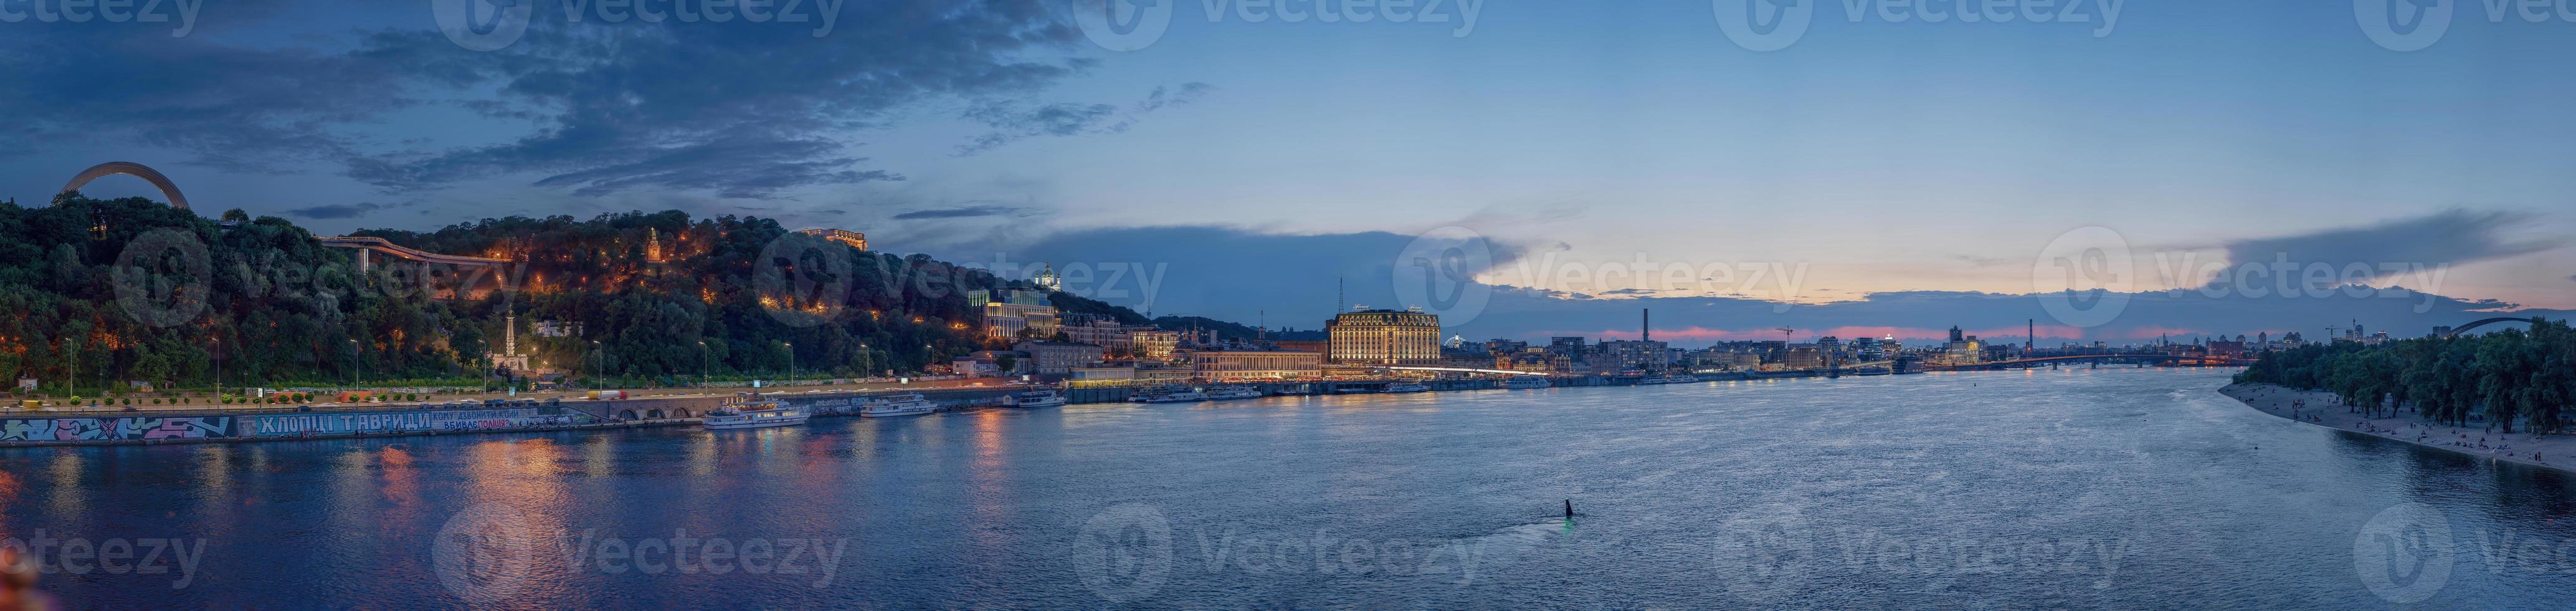 panorama nocturno de kiev, donde se puede ver el río dnieper, el terraplén, la plaza pochtovaya, st. la iglesia de andrew, el arco de la amistad del pueblo, vladimirskaya gorka. foto